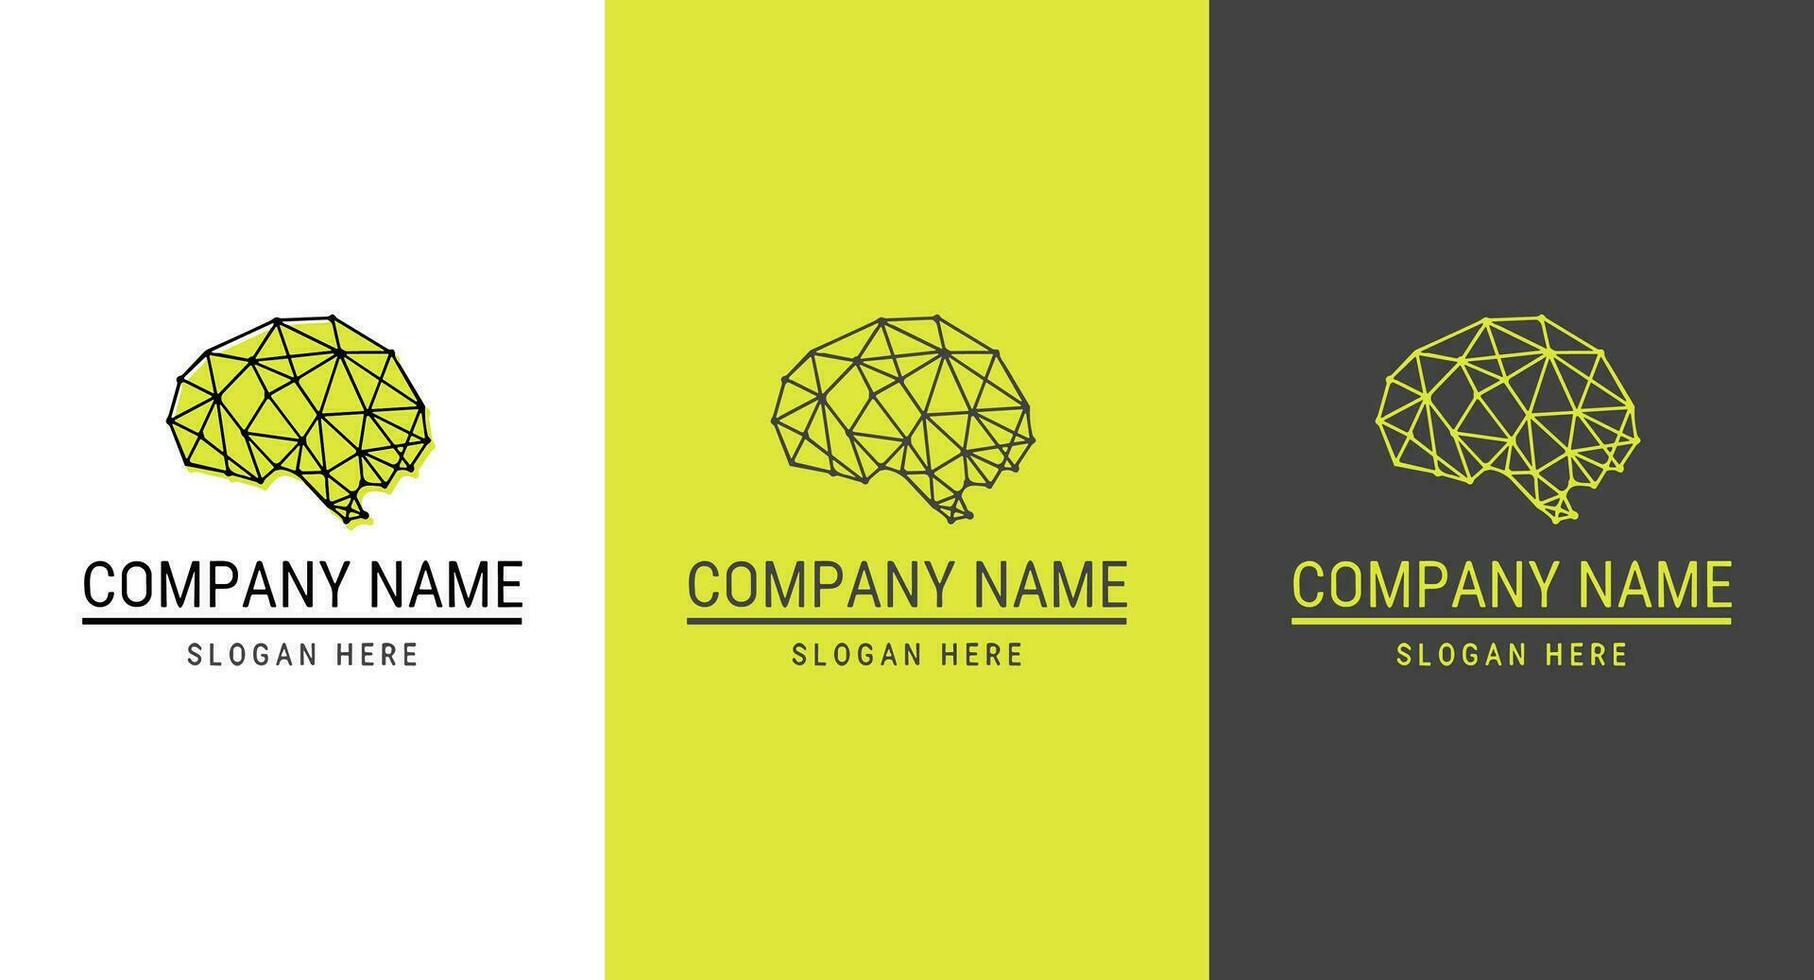 formazione scolastica logotipo concetto. logo design modello. vettore illustrazione.